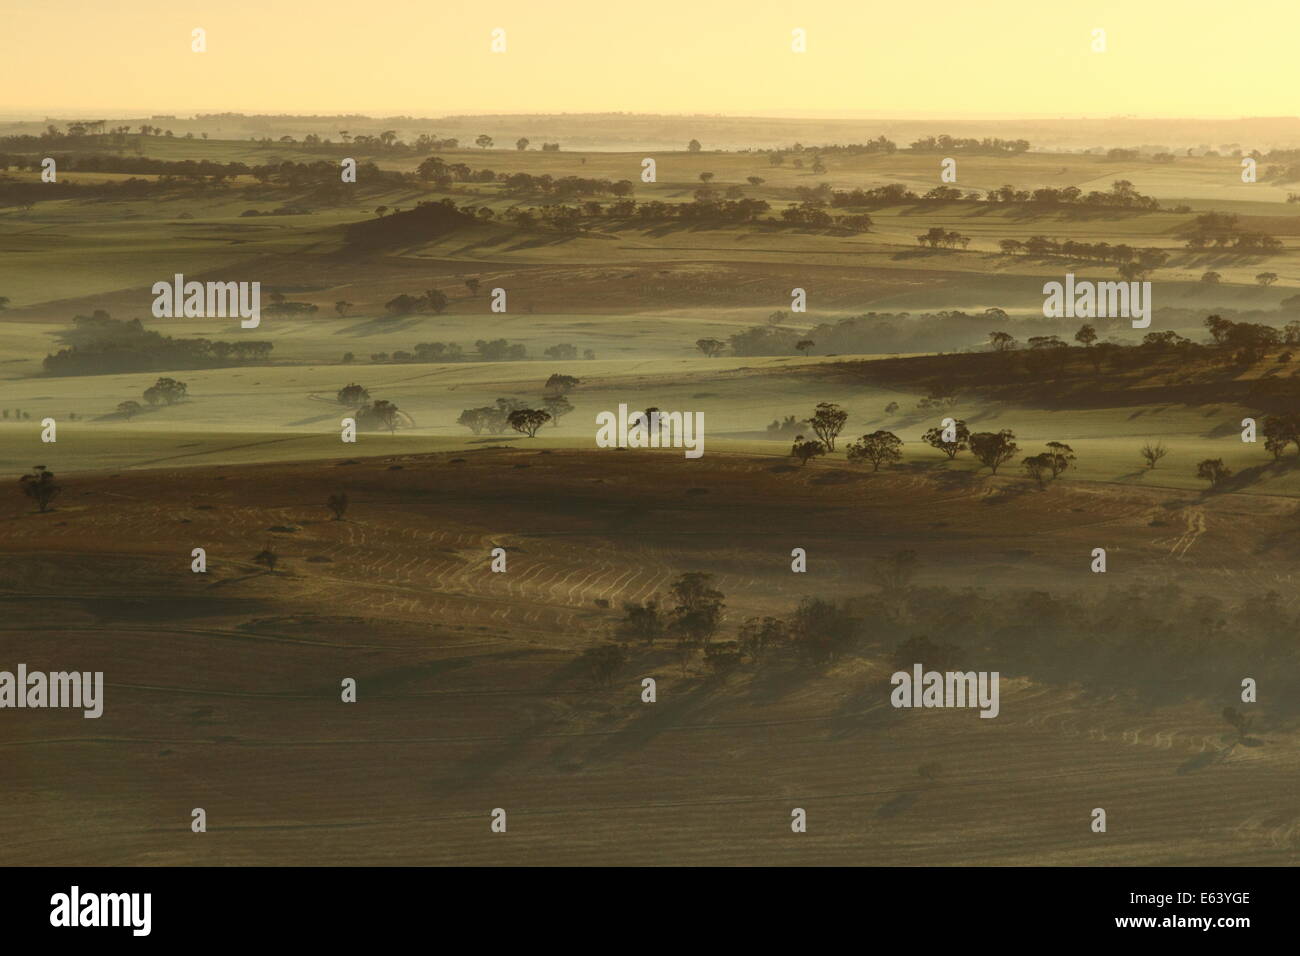 Am frühen Morgennebel streichelt landwirtschaftlich genutzten Feldern in der Nähe von Northam, Avon Valley, Western Australia - aus einem Heißluftballon betrachtet. Stockfoto